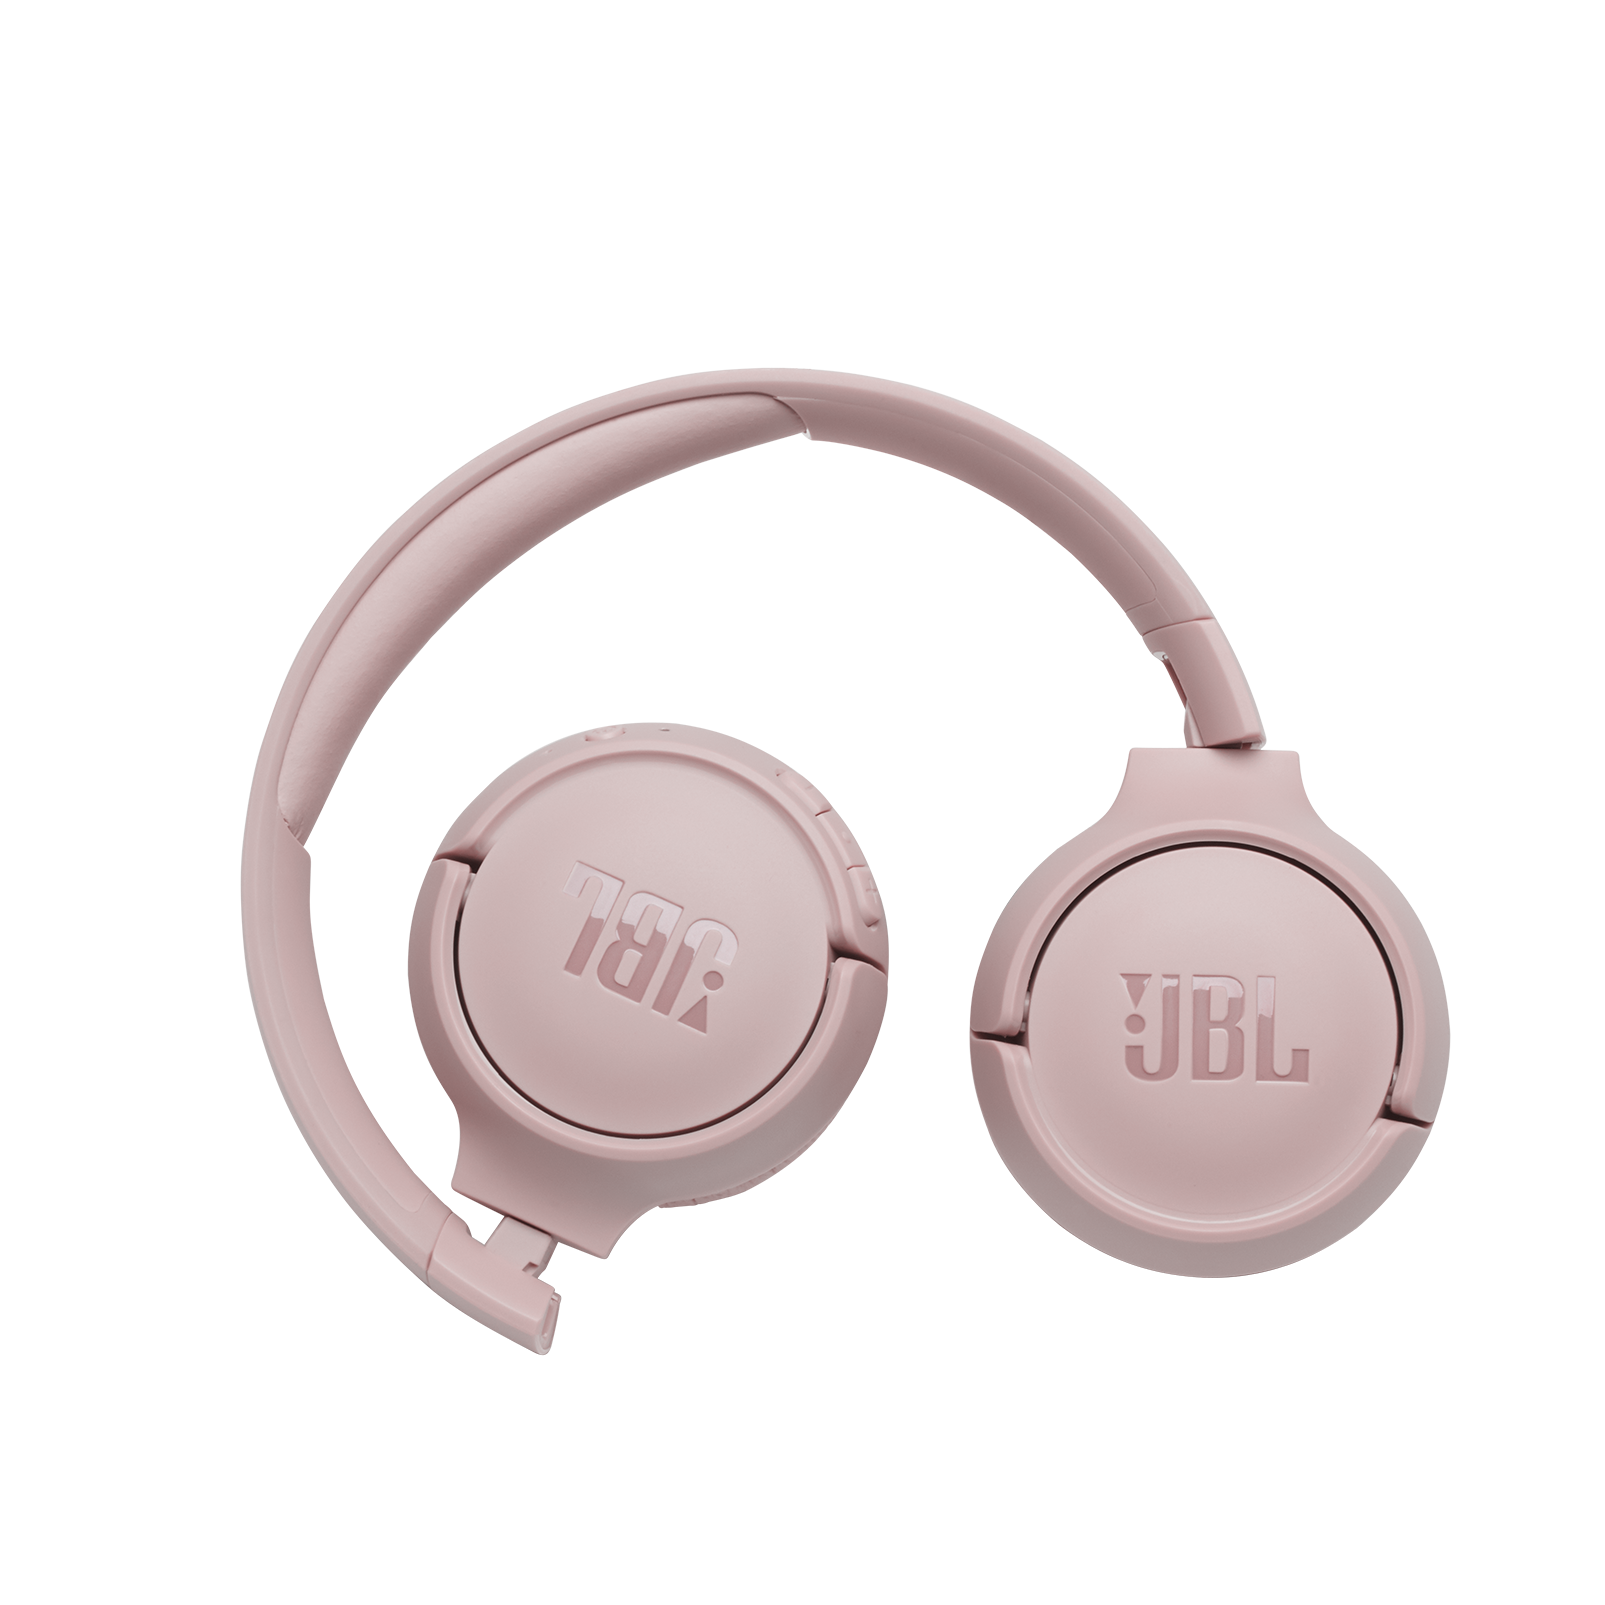 JBL Tune 560BT - Pink - Wireless on-ear headphones - Front